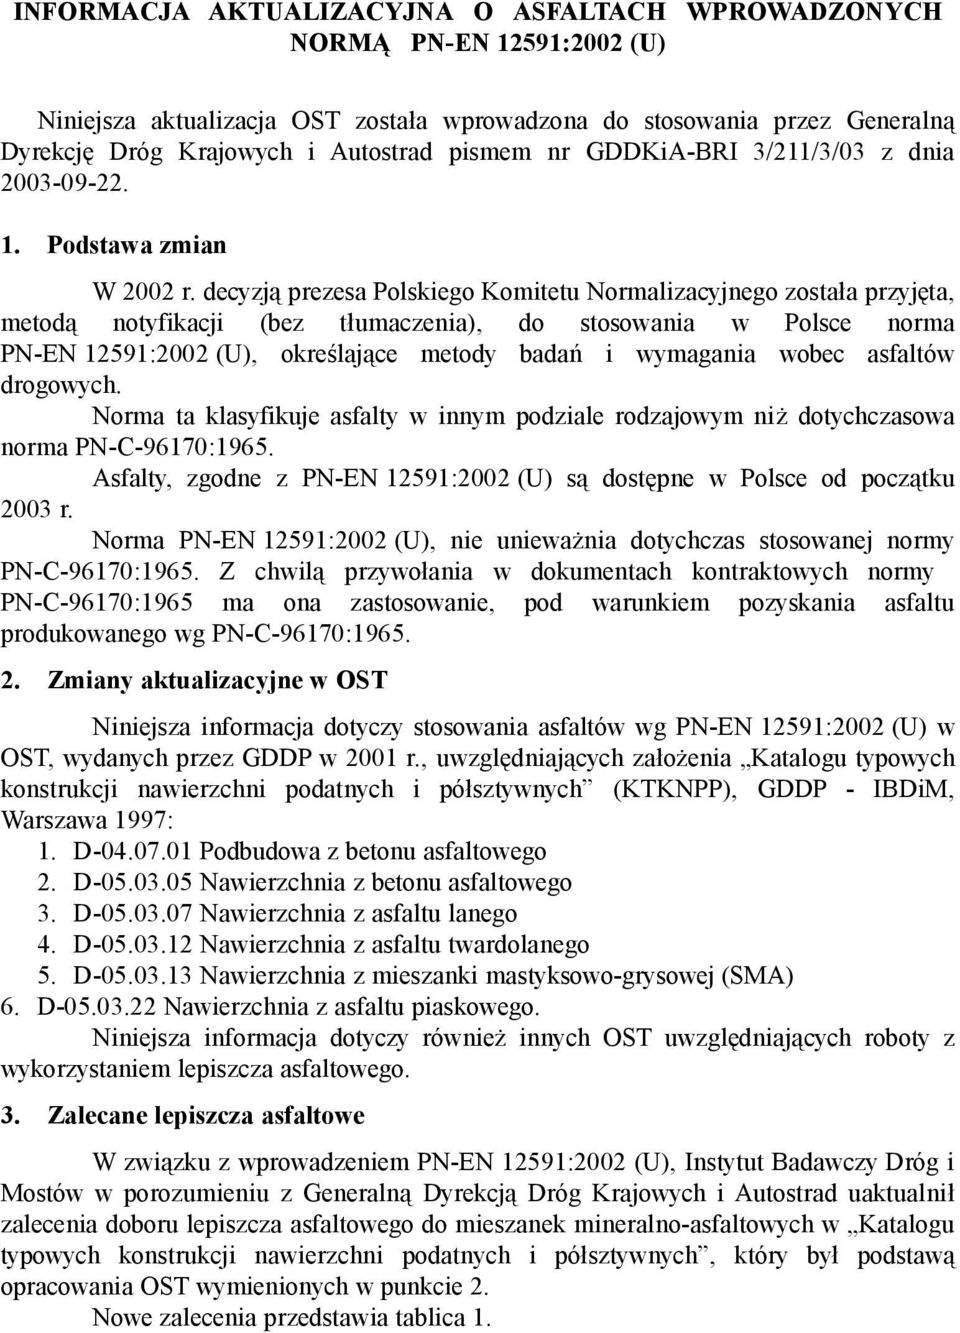 decyzją prezesa Polskiego Komitetu Normalizacyjnego została przyjęta, metodą notyfikacji (bez tłumaczenia), do stosowania w Polsce norma PN-EN 12591:2002 (U), określające metody badań i wymagania